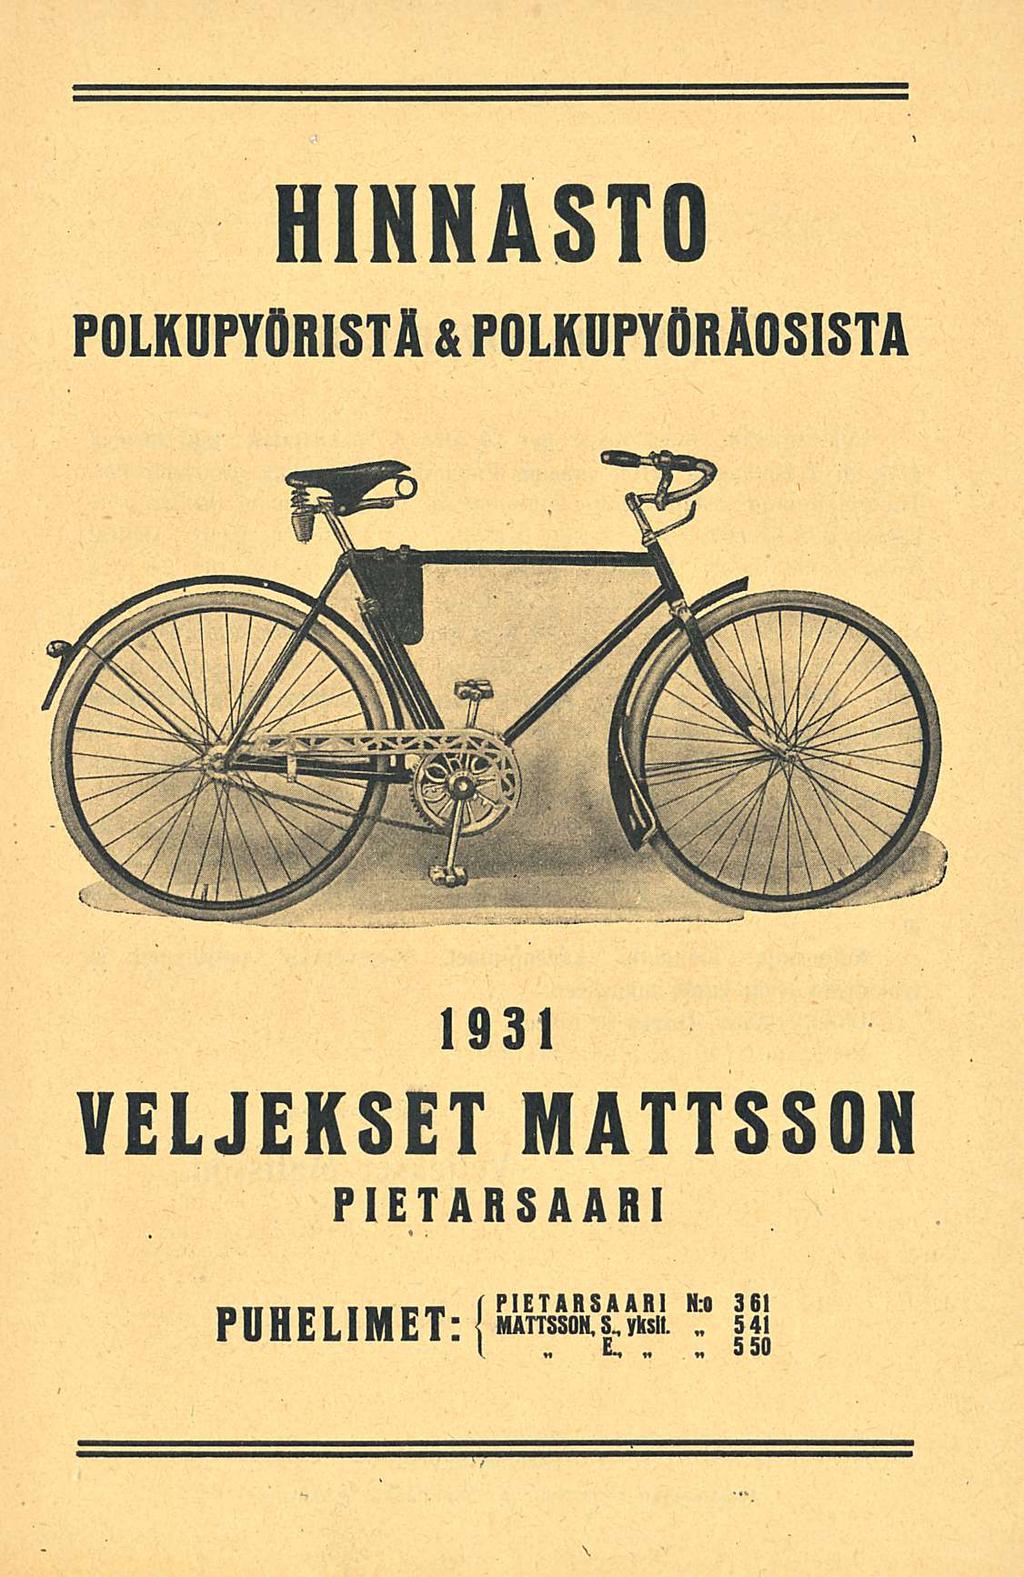 HINNASTO POLKUPYÖRISTÄ & POLKDPYÖRÄOSISTA 1931 VELJEKSET